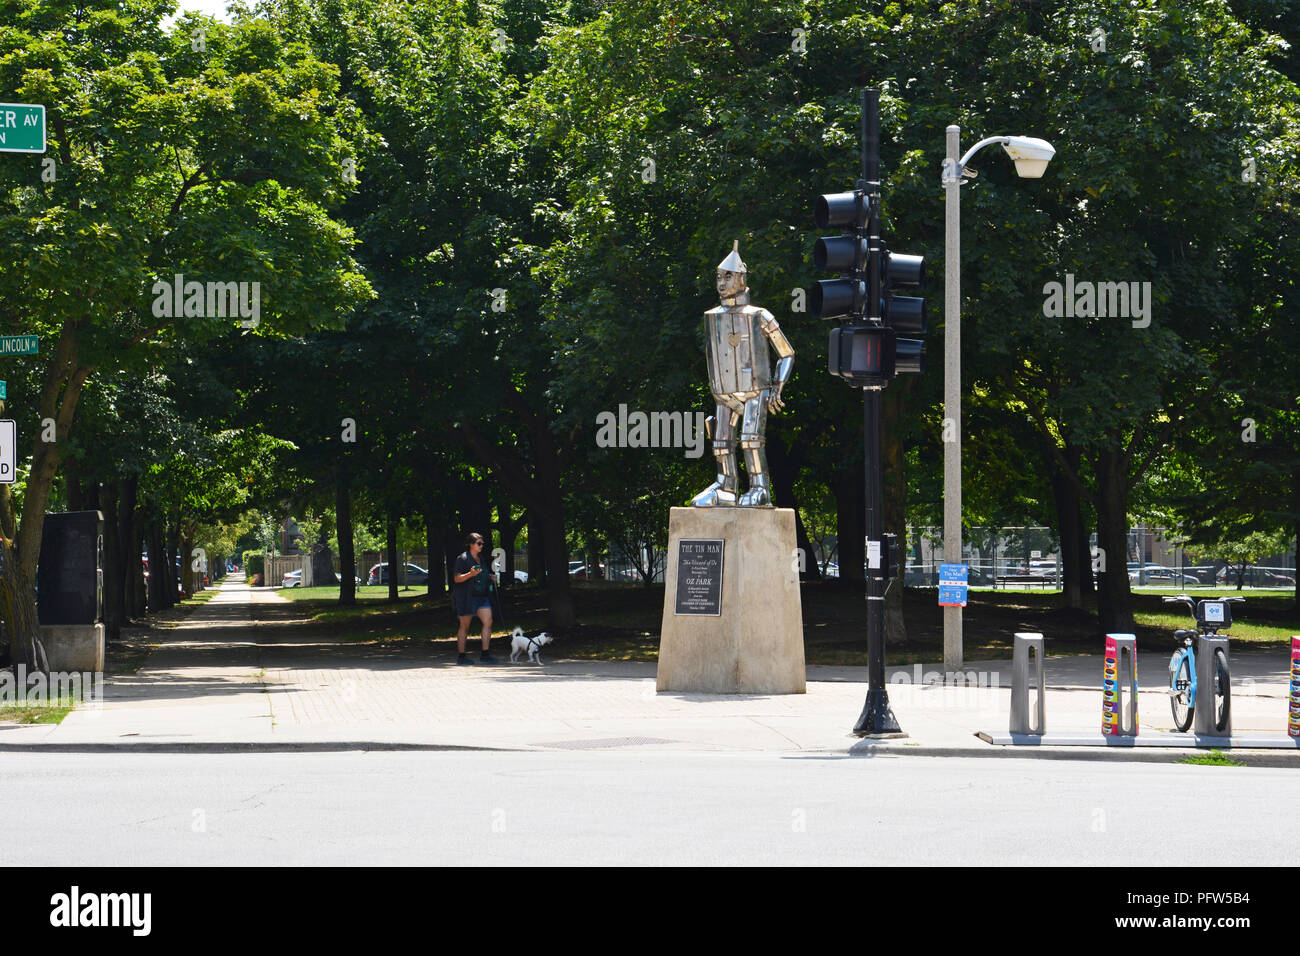 Der Zinn-mann Statue grüßt Besucher an der Ecke Webster und Lincoln Avenue am Eingang von Oz Park in Chicago's Lincoln Park Nachbarschaft. Stockfoto